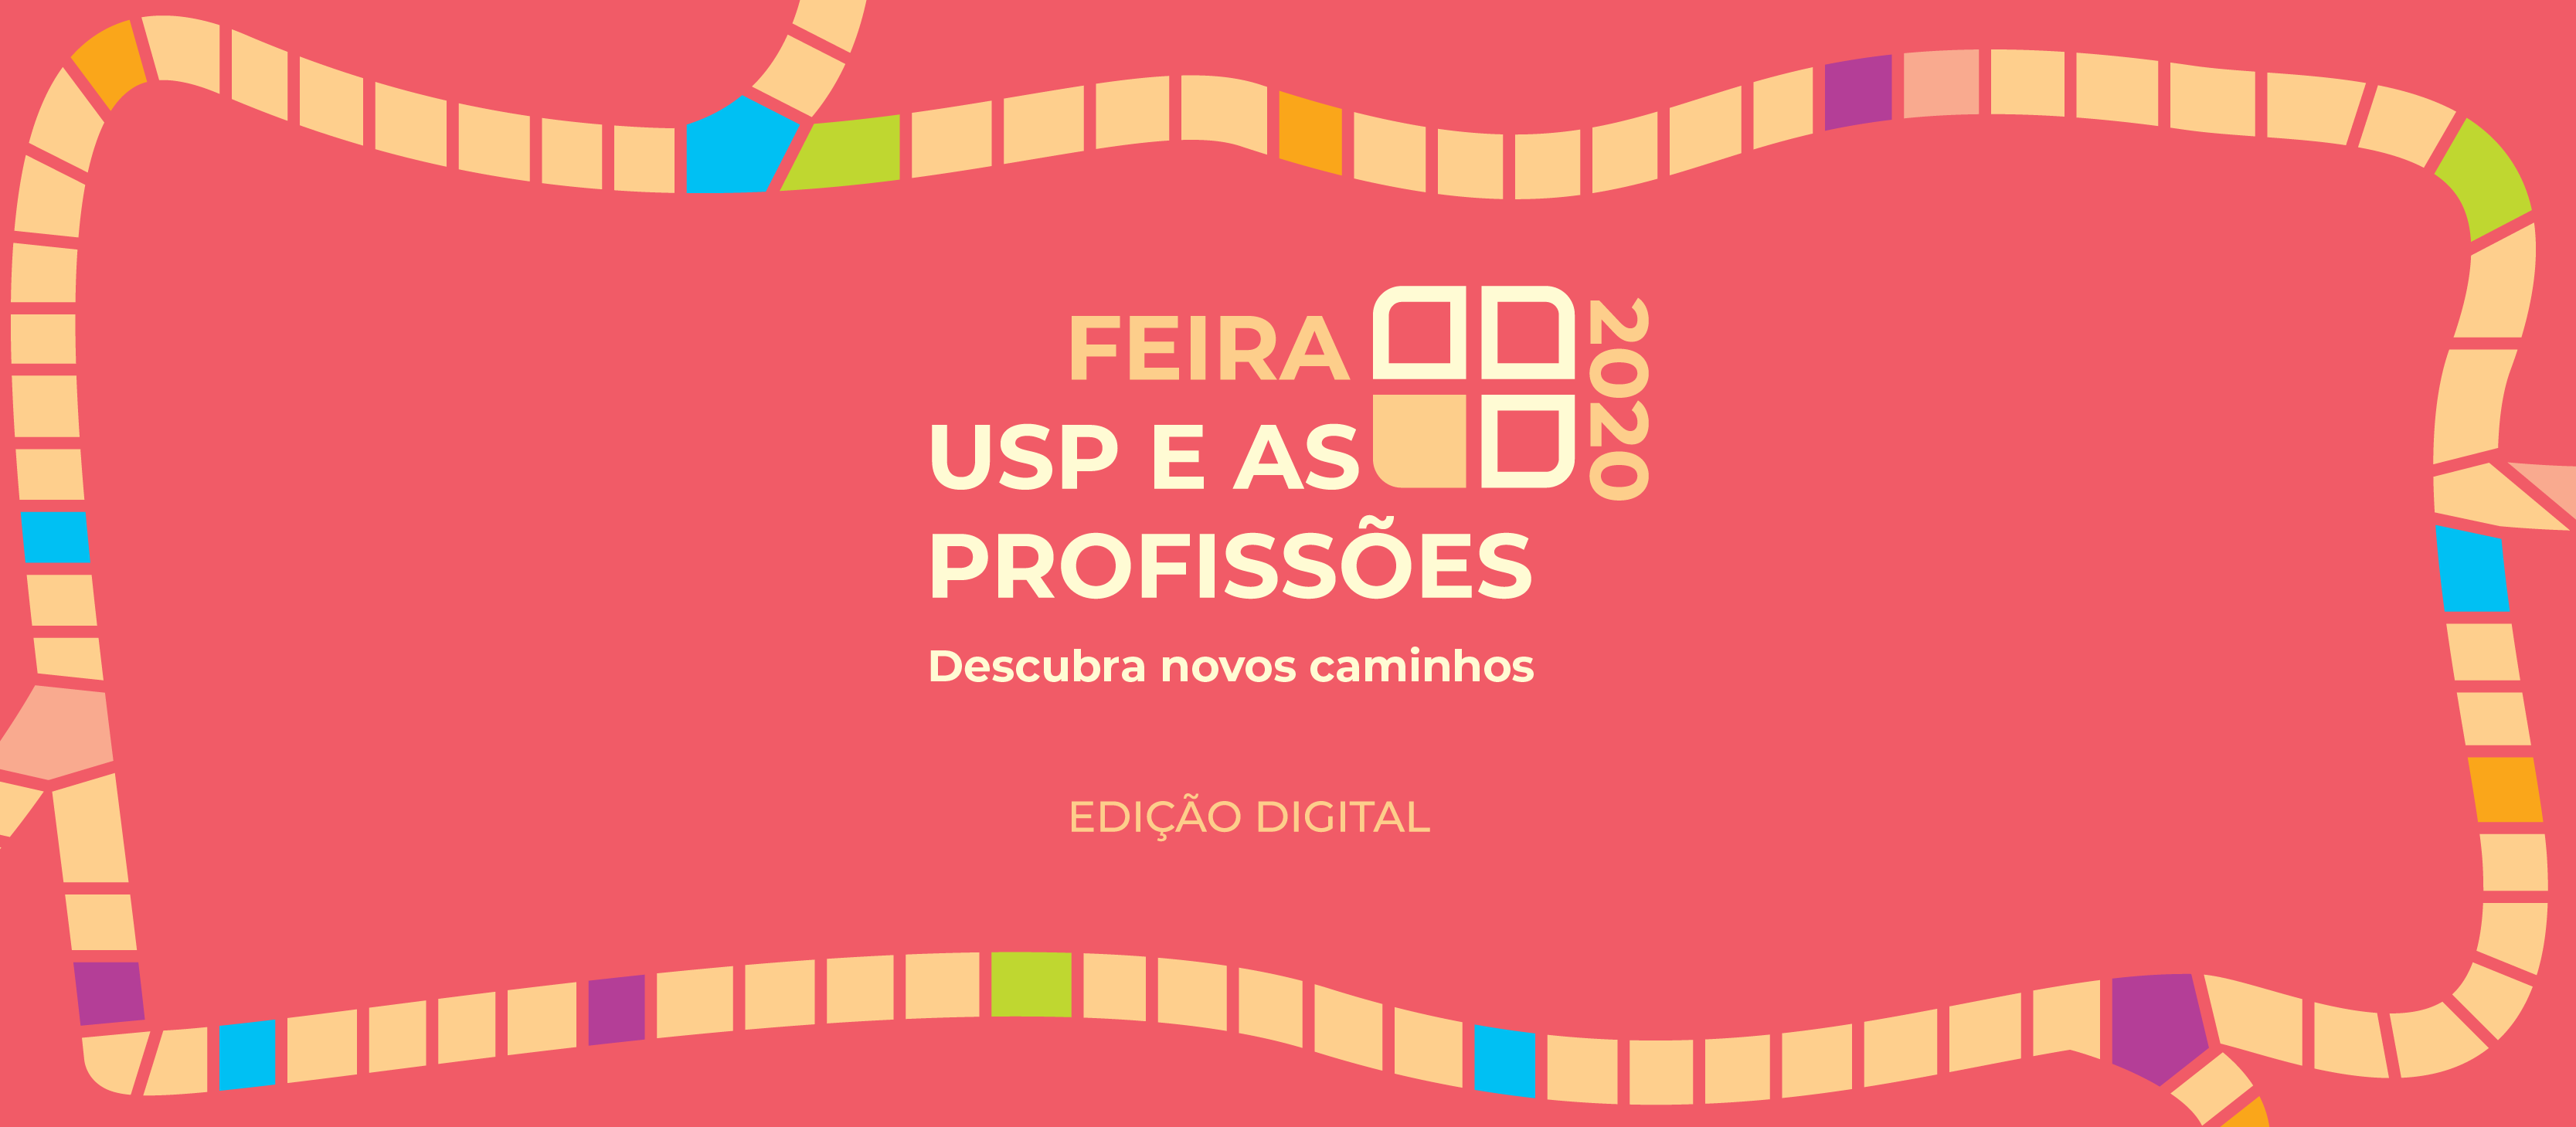 La Feria de Profesiones de la USP en versión online llega a todo Brasil y a más de 40 países